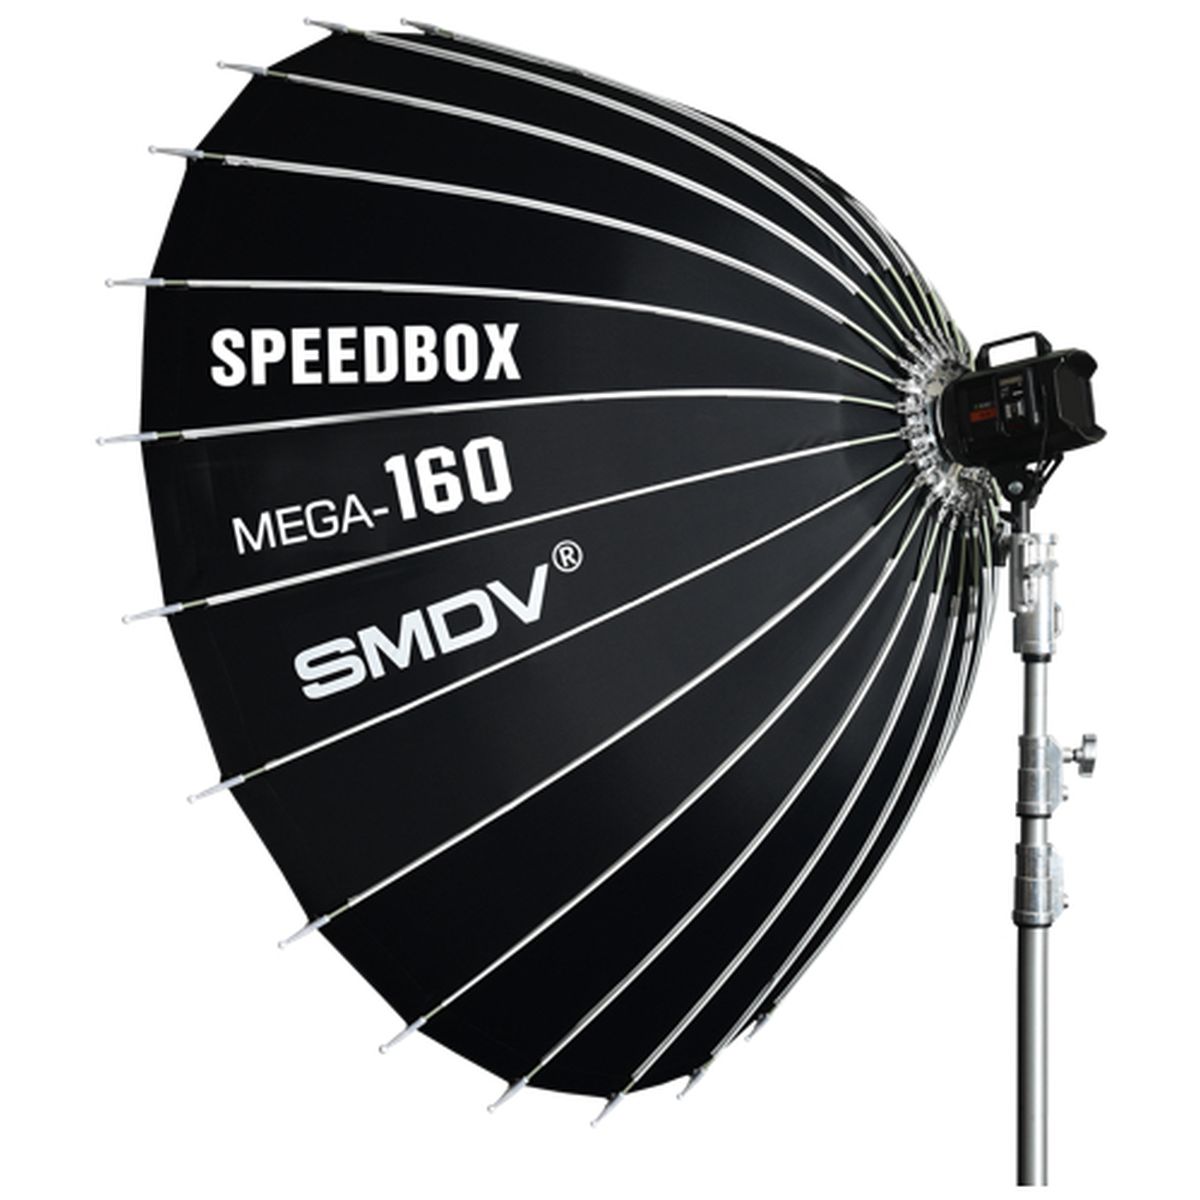 SMDV Speedbox Mega-160 Softbox 160 cm breit, weiße Bowens-Halterung